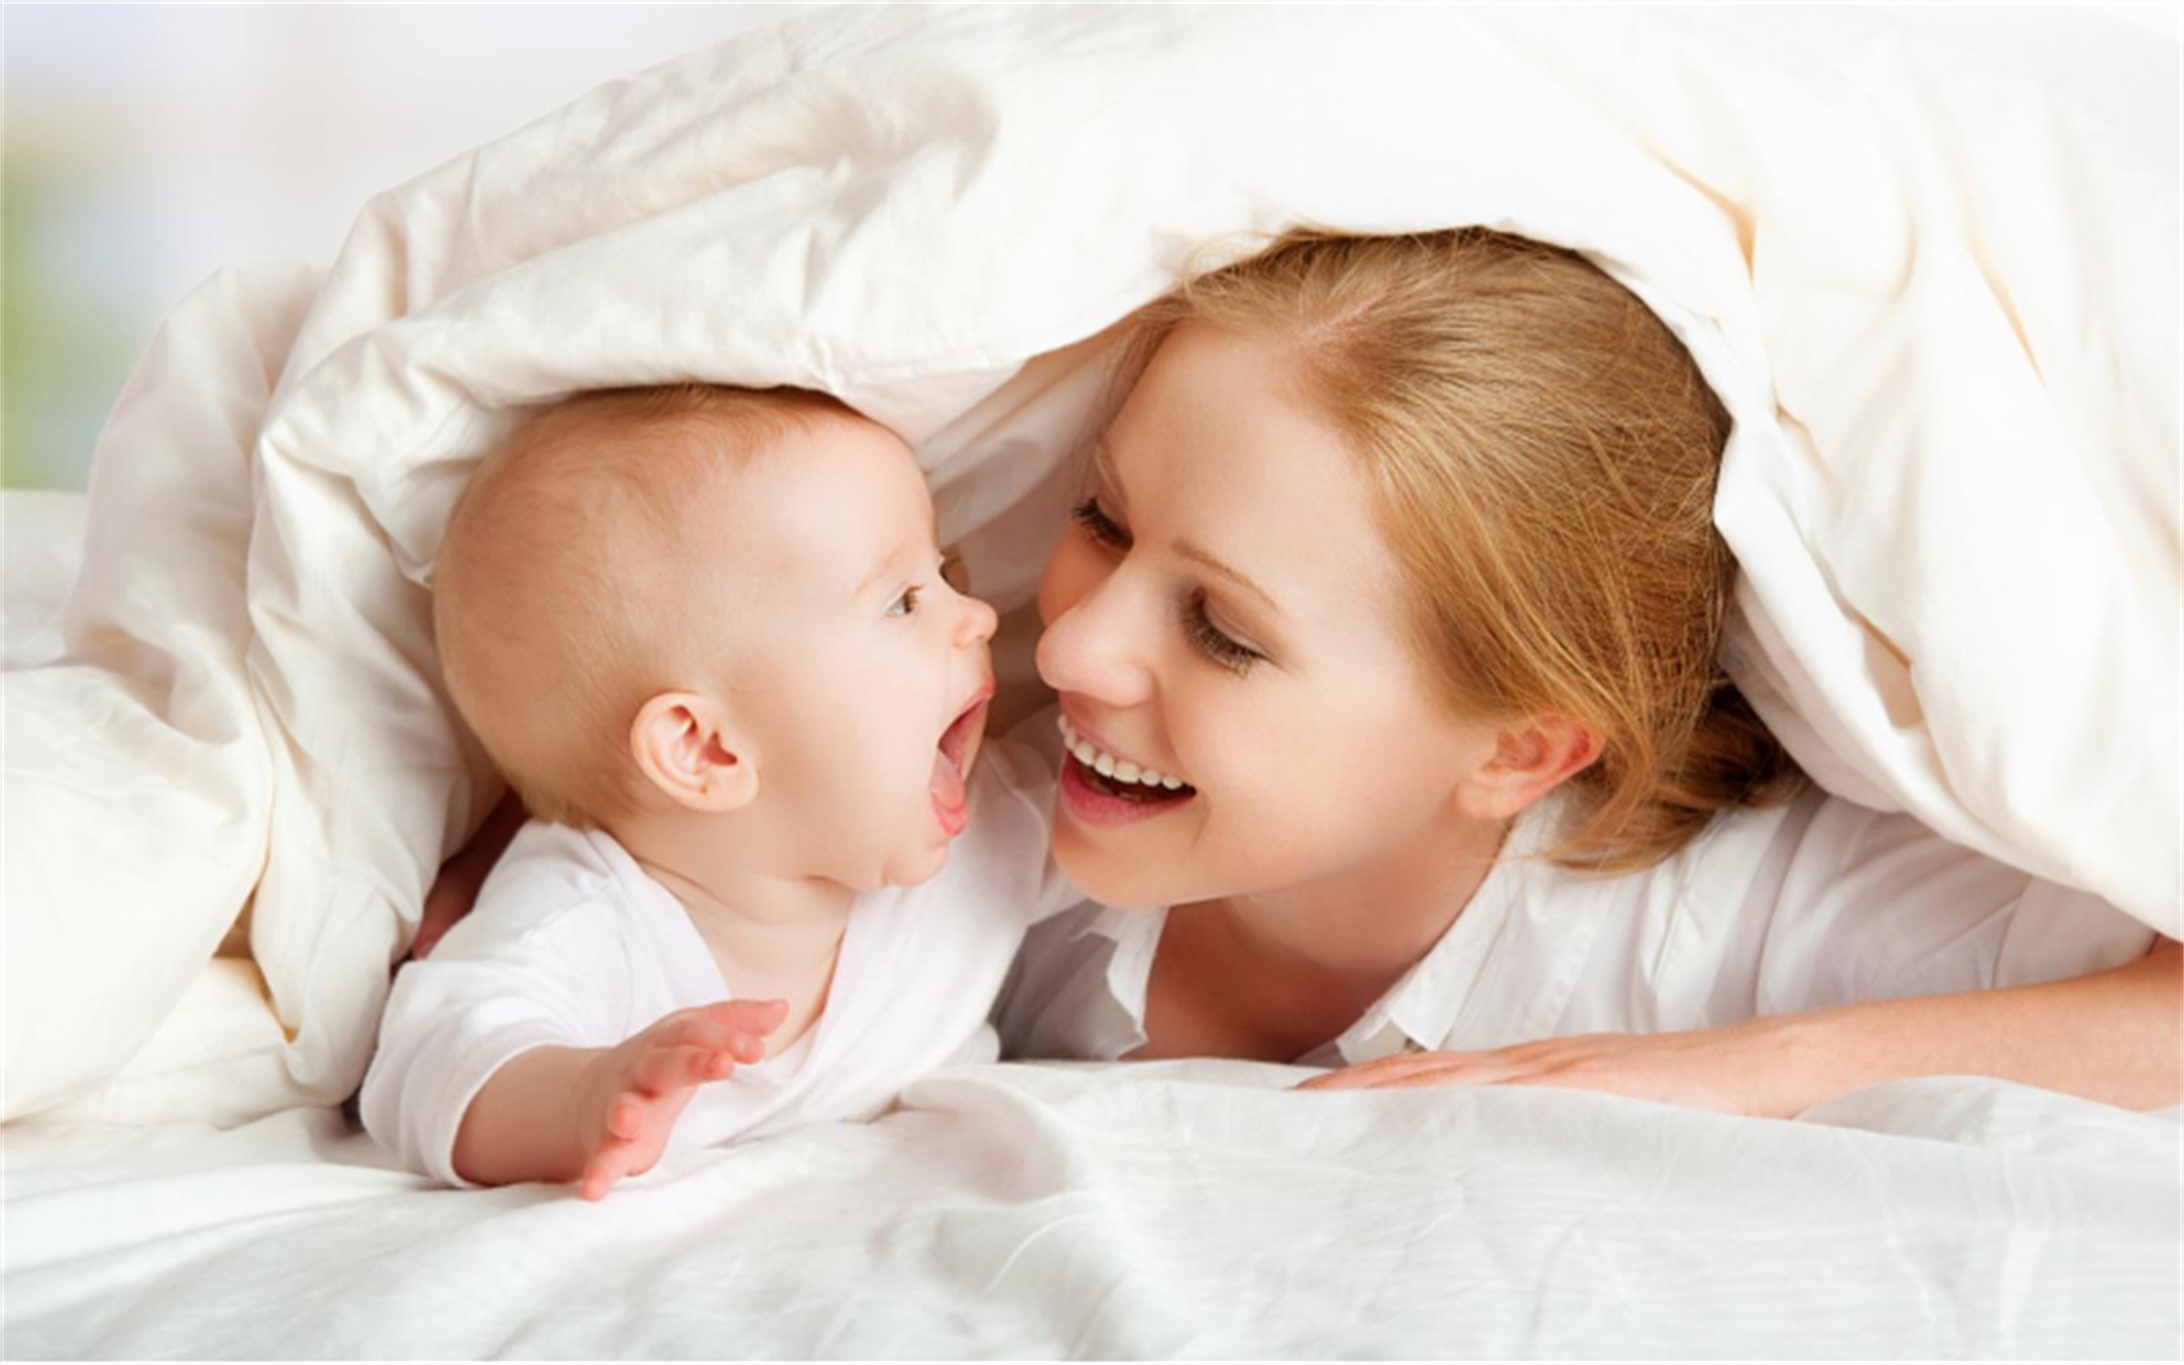 母亲和婴儿系列 - 正在和宝宝玩耍的母亲 - 素材公社 tooopen.com